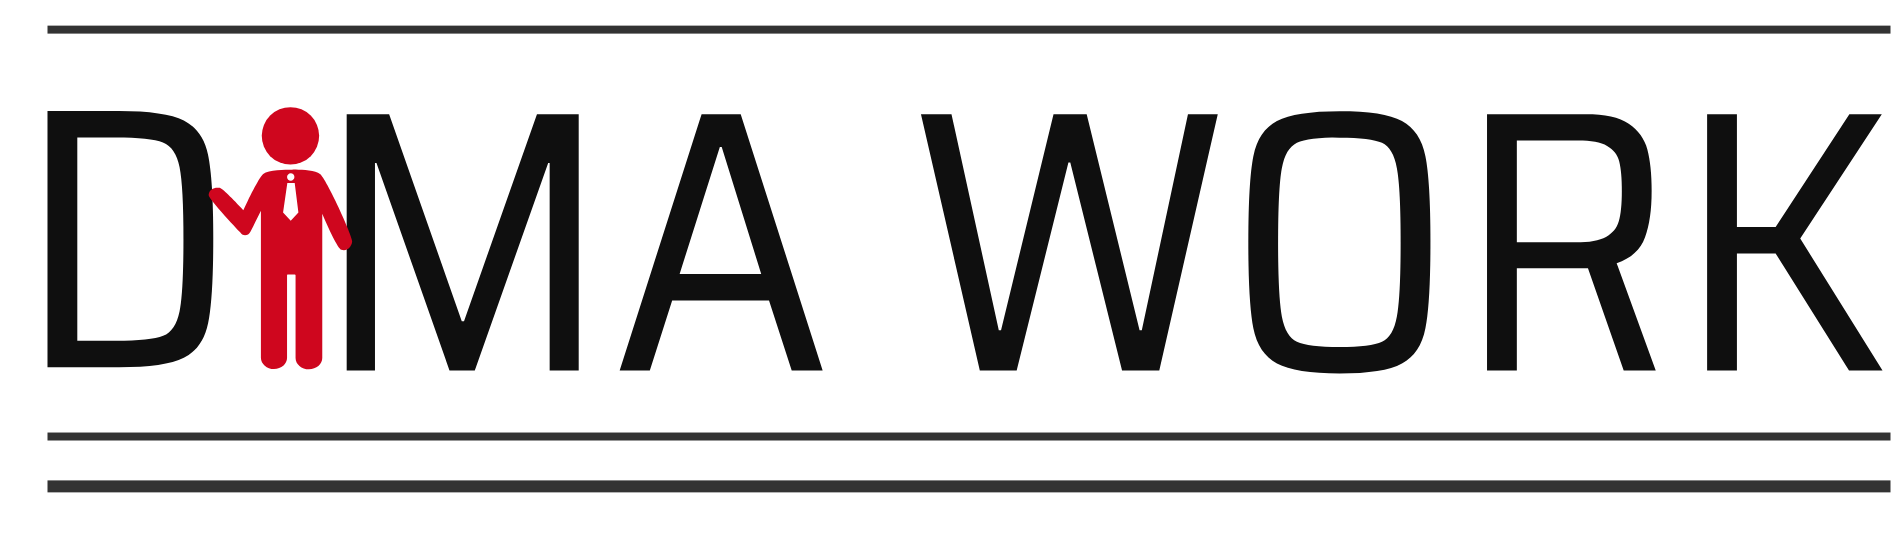 DIMA Work GmbH in Leipzig und Wismar Logo 02